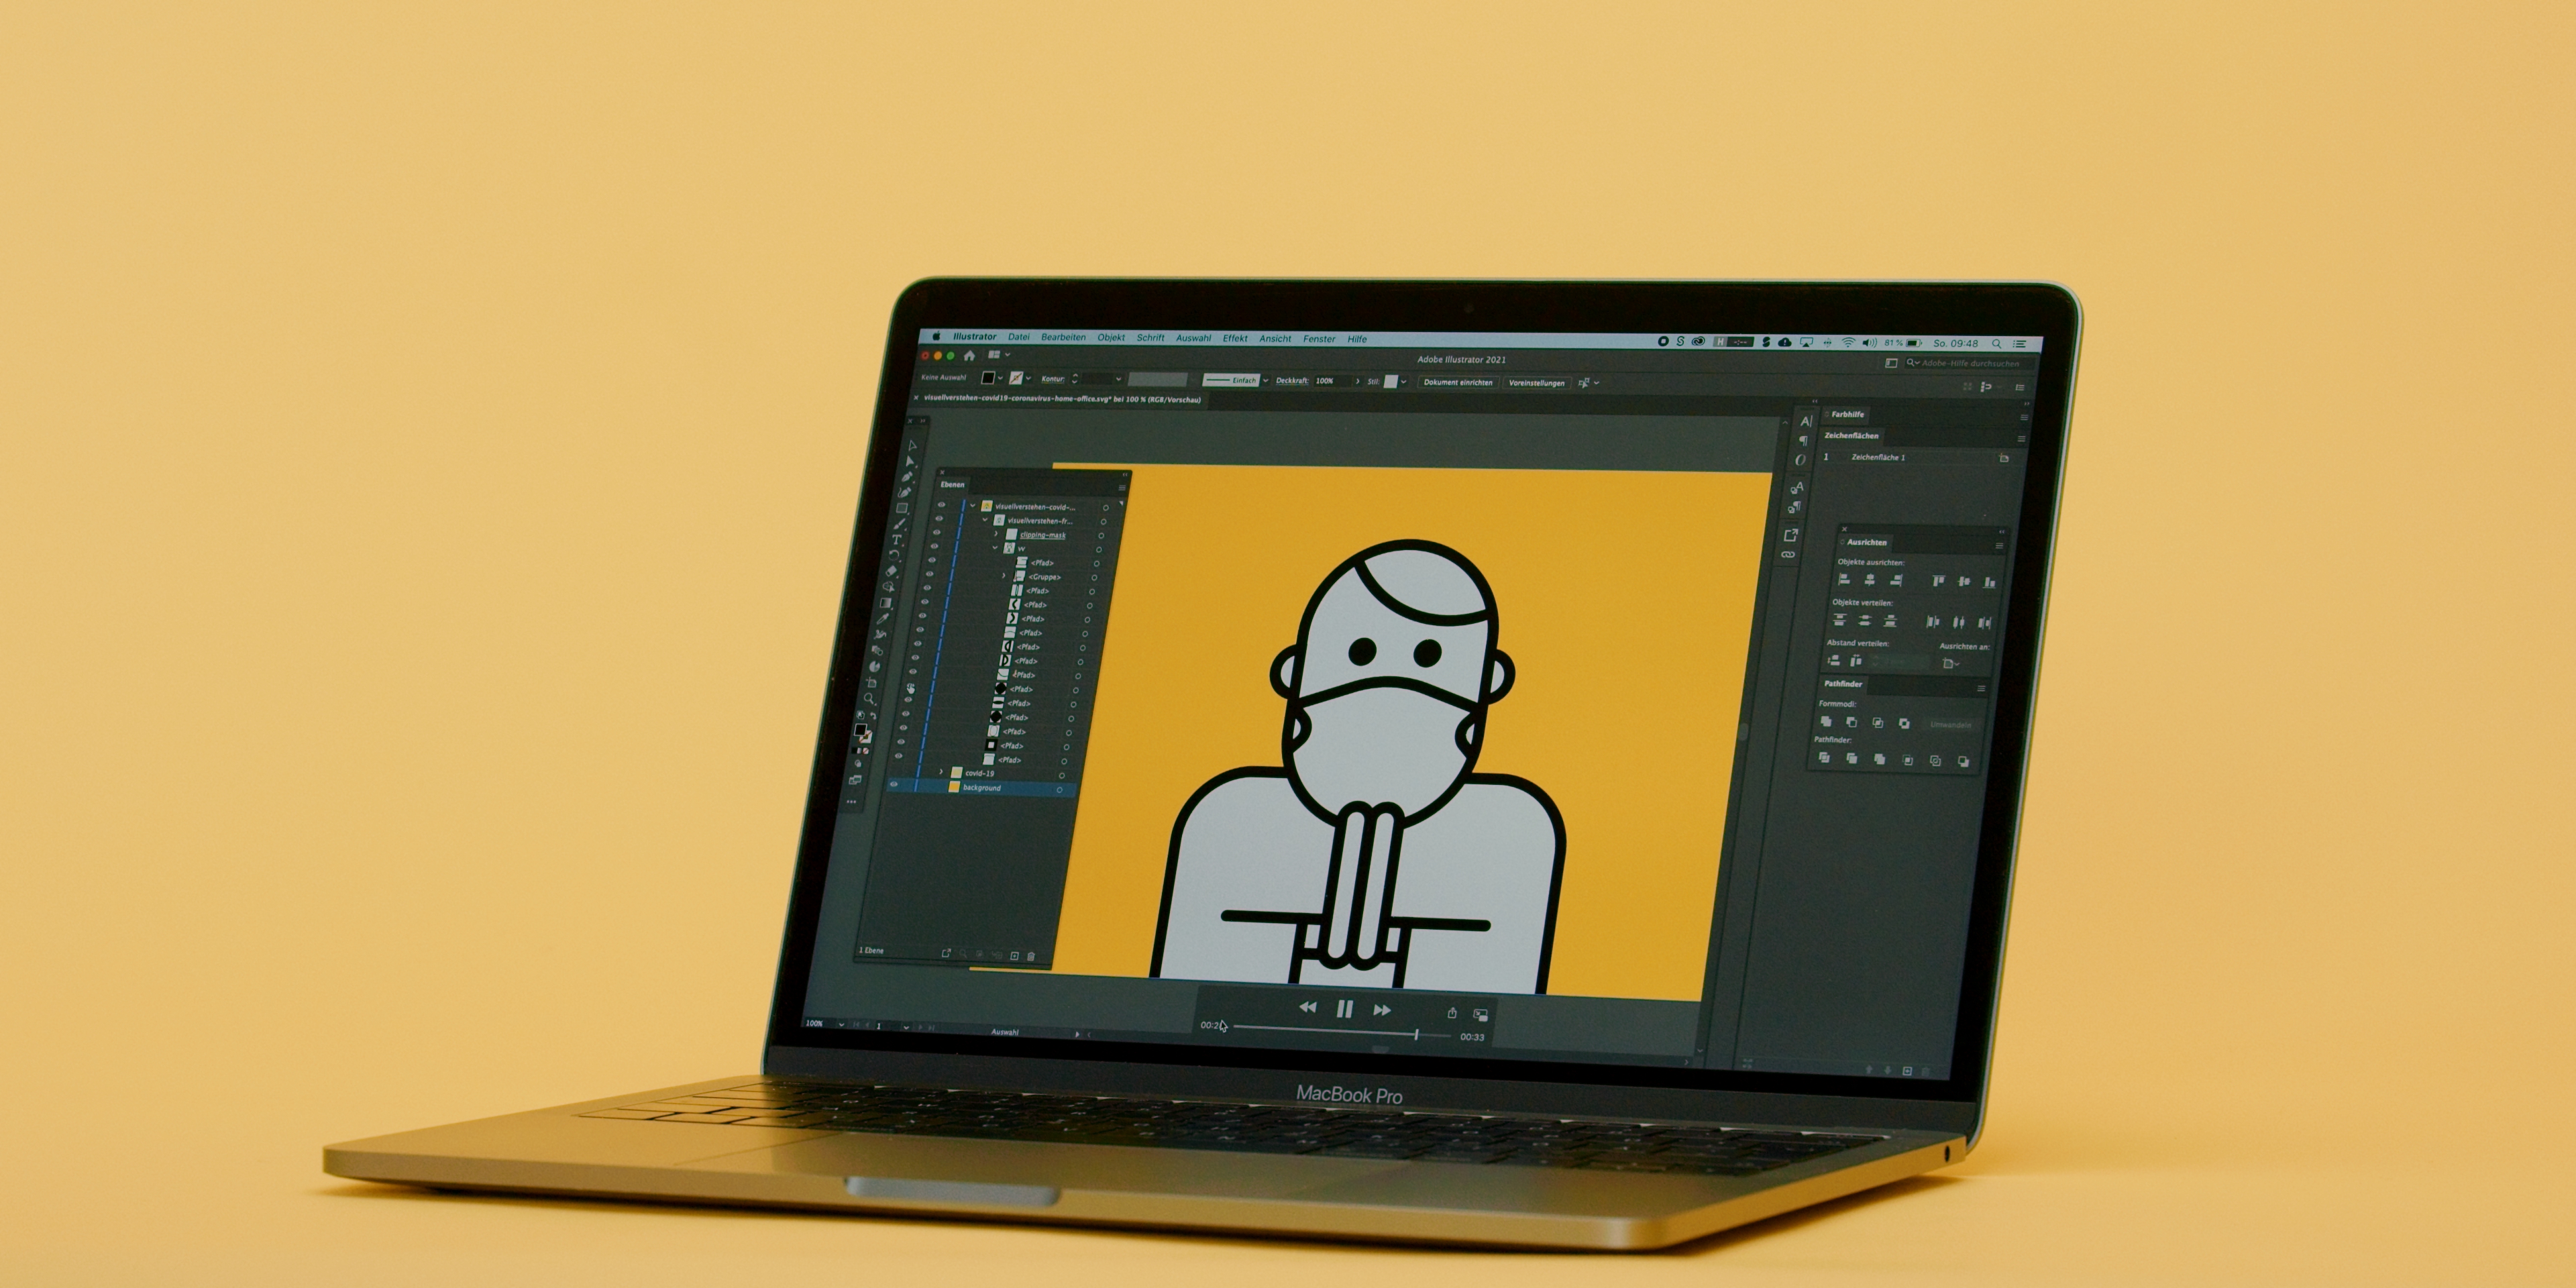 Ein Macbook Pro vor orangem Hintergrund, auf dem in Adobe Illustrator eine gezeichnete Person mit Maske betend abgebildet ist.